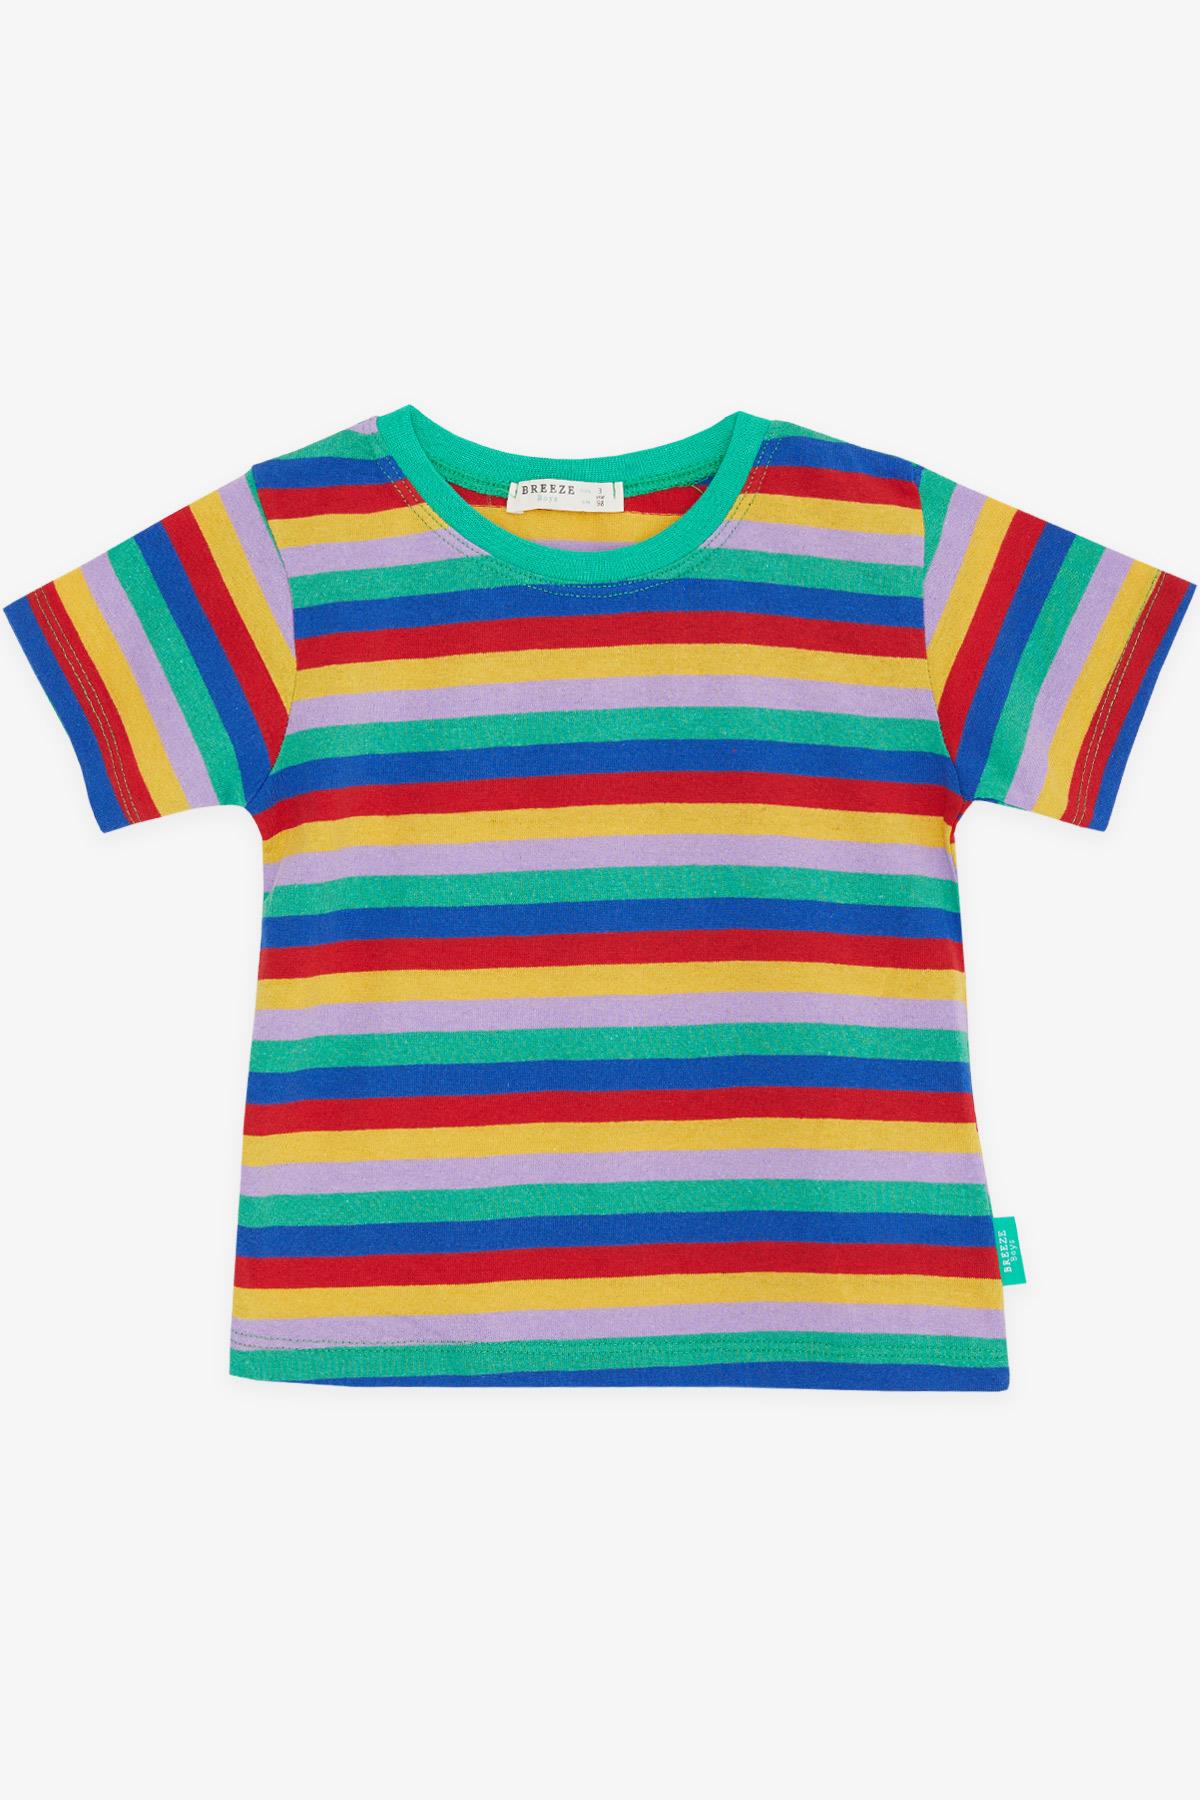 Erkek Çocuk Tişört Renkli Çizgili Karışık Renk 3-7 Yaş - Yazlık Tişört  Modelleri | Breeze